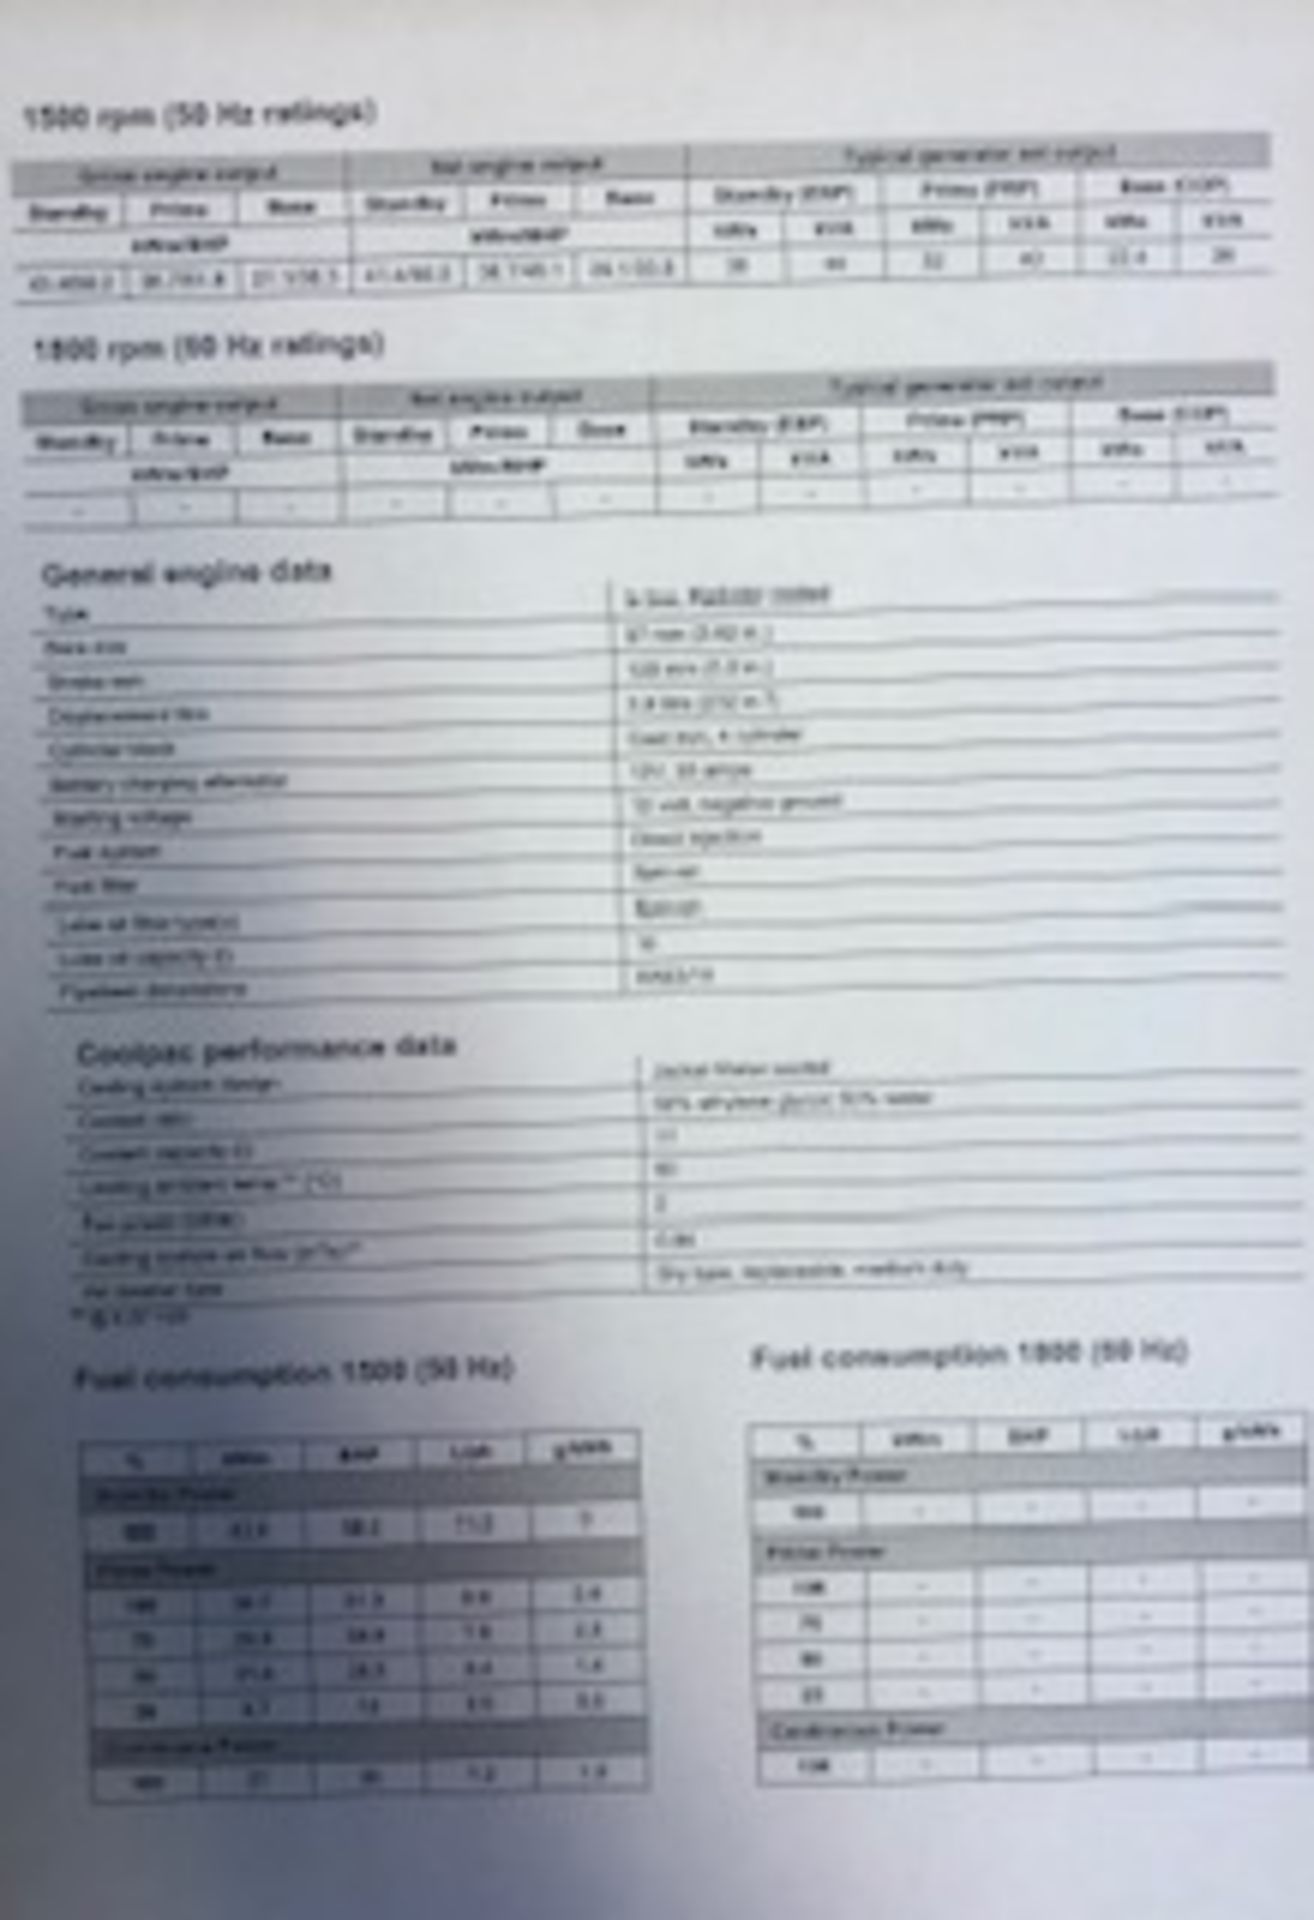 CUMMINS S3.4 G4 DRIVE GENERATOR, ARZ801295 *PLUS VAT* - Image 6 of 7